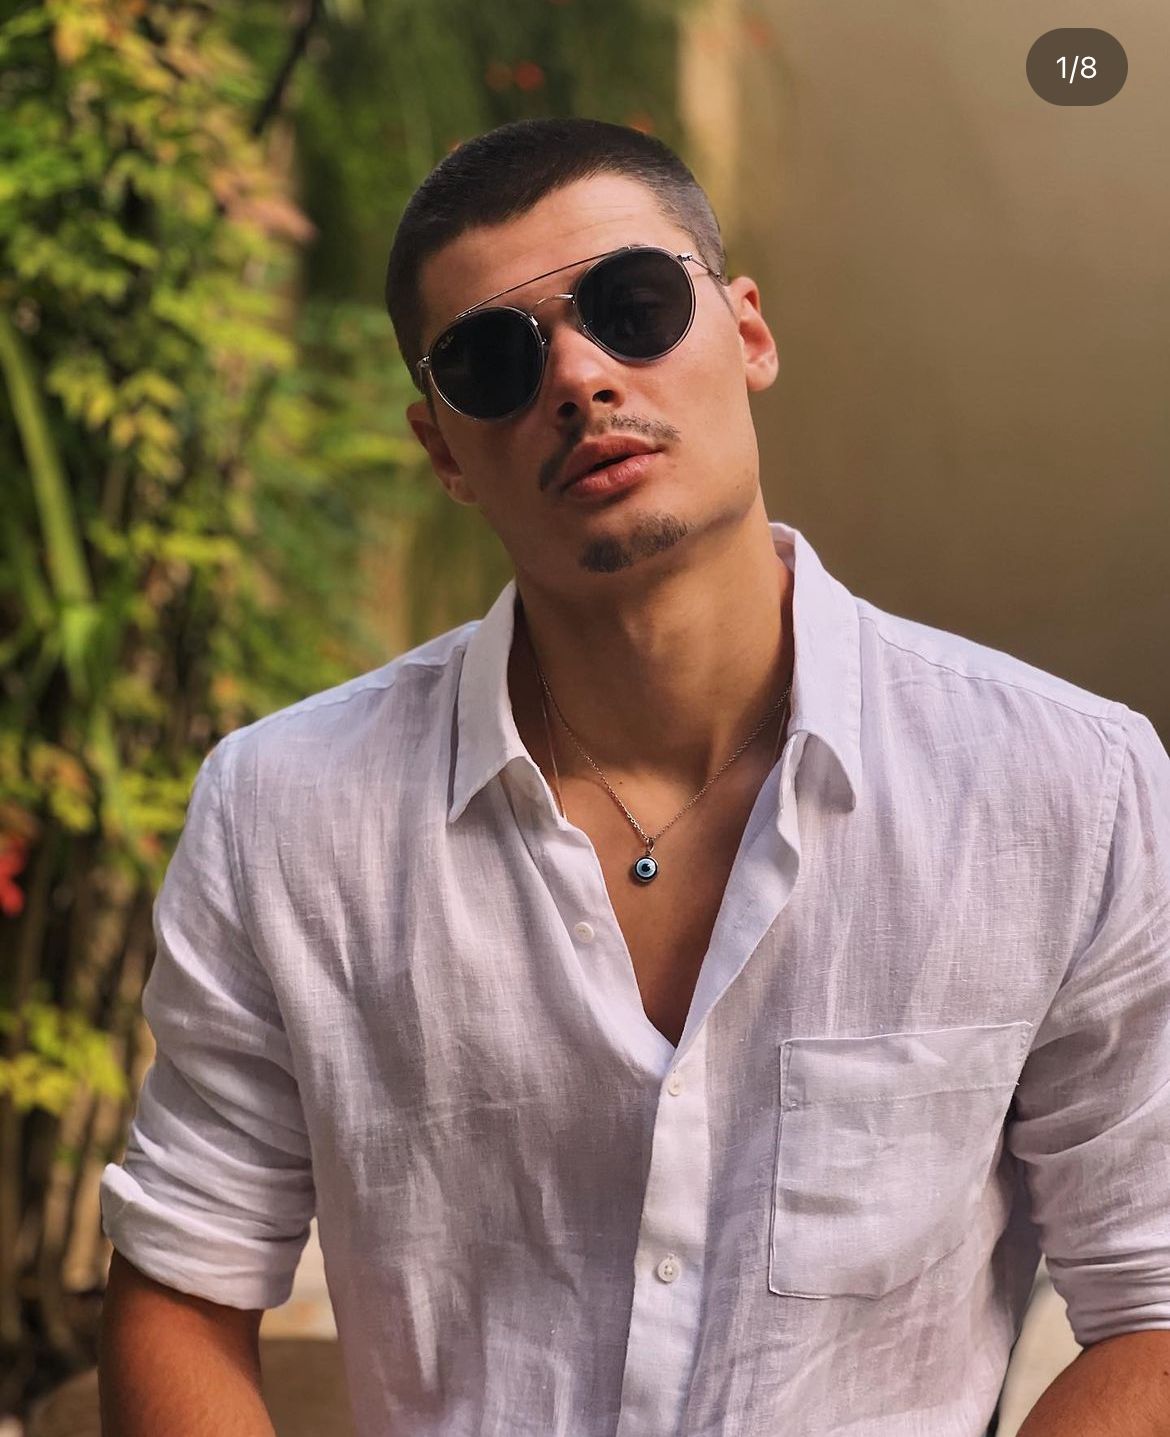 João, filho de Fábio Assunção, rouba a cena com sua beleza exuberante e aos 20 anos, se tornou um dos homens mais lindos do Brasil - Foto Reprodução Instagram